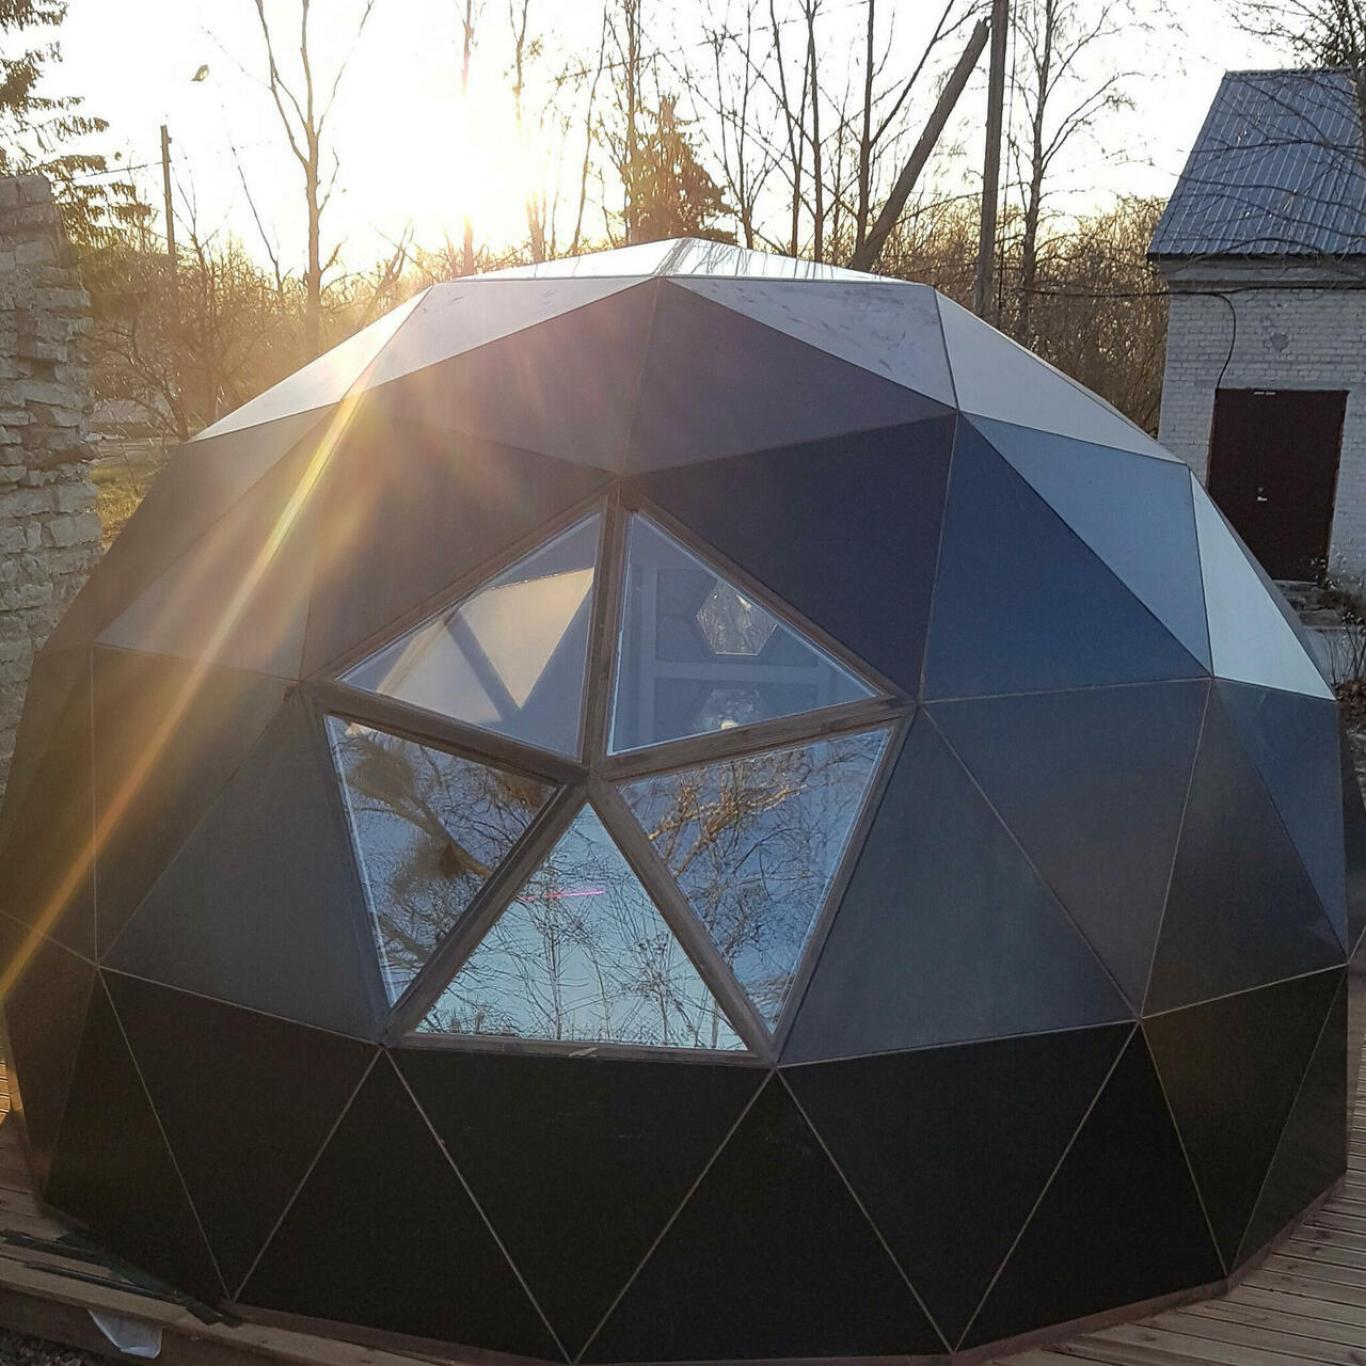 Dome2You põhitegevuseks on kuppelmajade valmistamine.Lisaks toodame dekoratiivseid seinapaneele, riiuleid ja disain seinavalgusteid.Kuppelmaja on oma kujult ja 